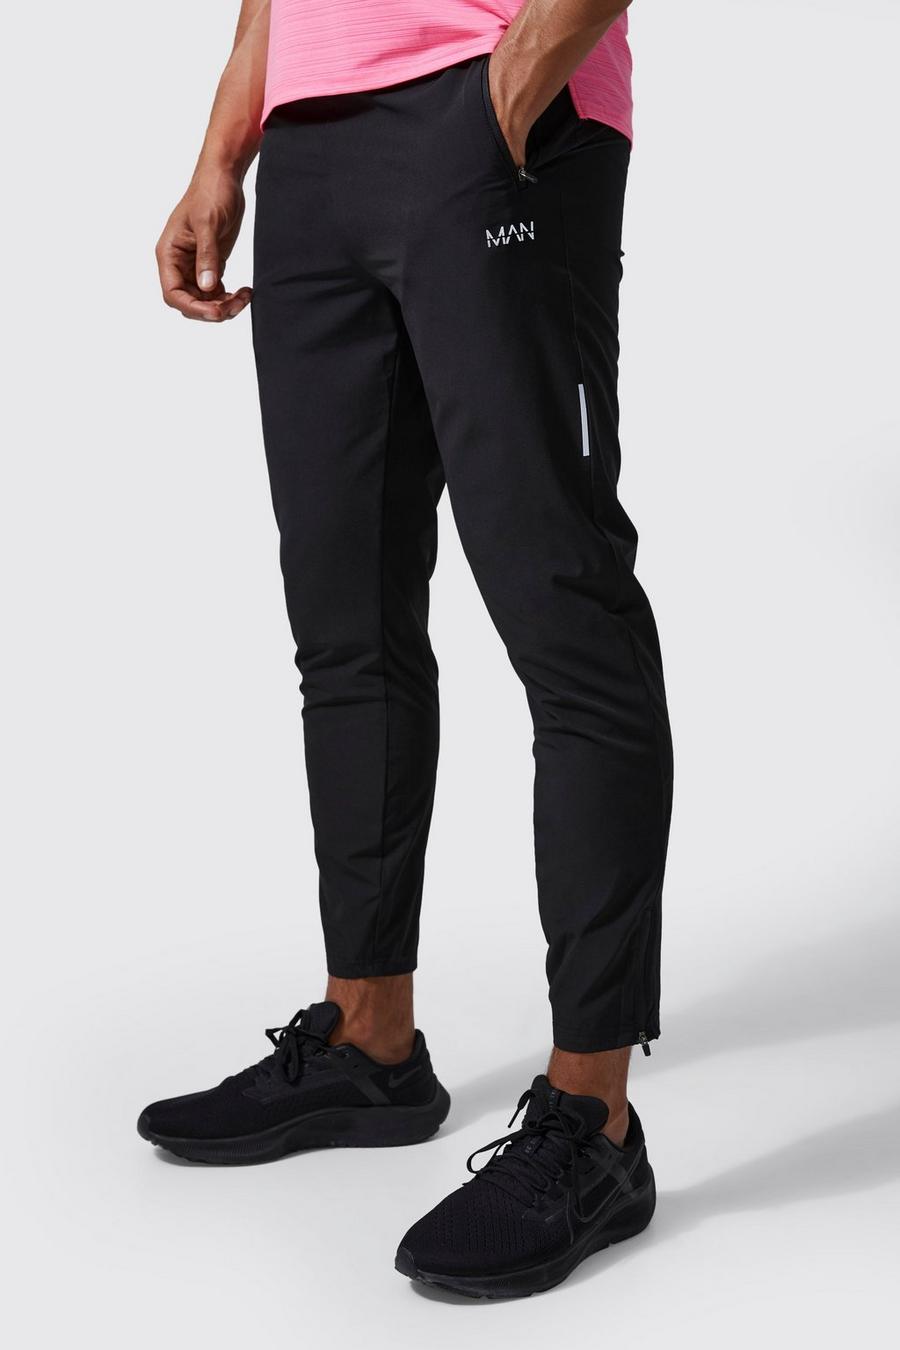 Pantaloni tuta leggeri Man Active per alta performance, Black image number 1